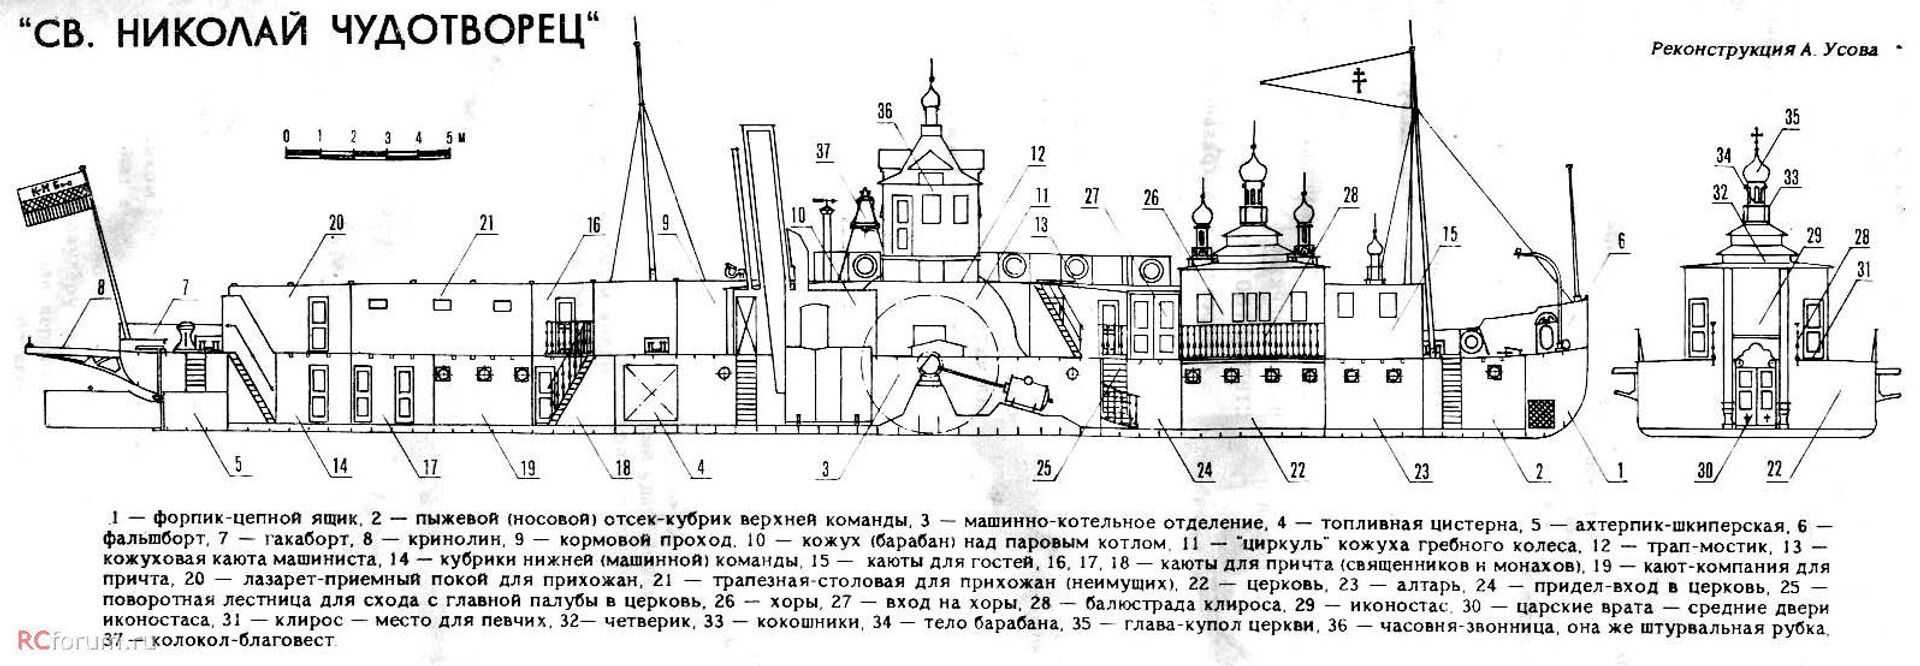 Зашто је изграђена јединствена пловећа црква у Русији /фото/ - Sputnik Србија, 1920, 28.03.2021